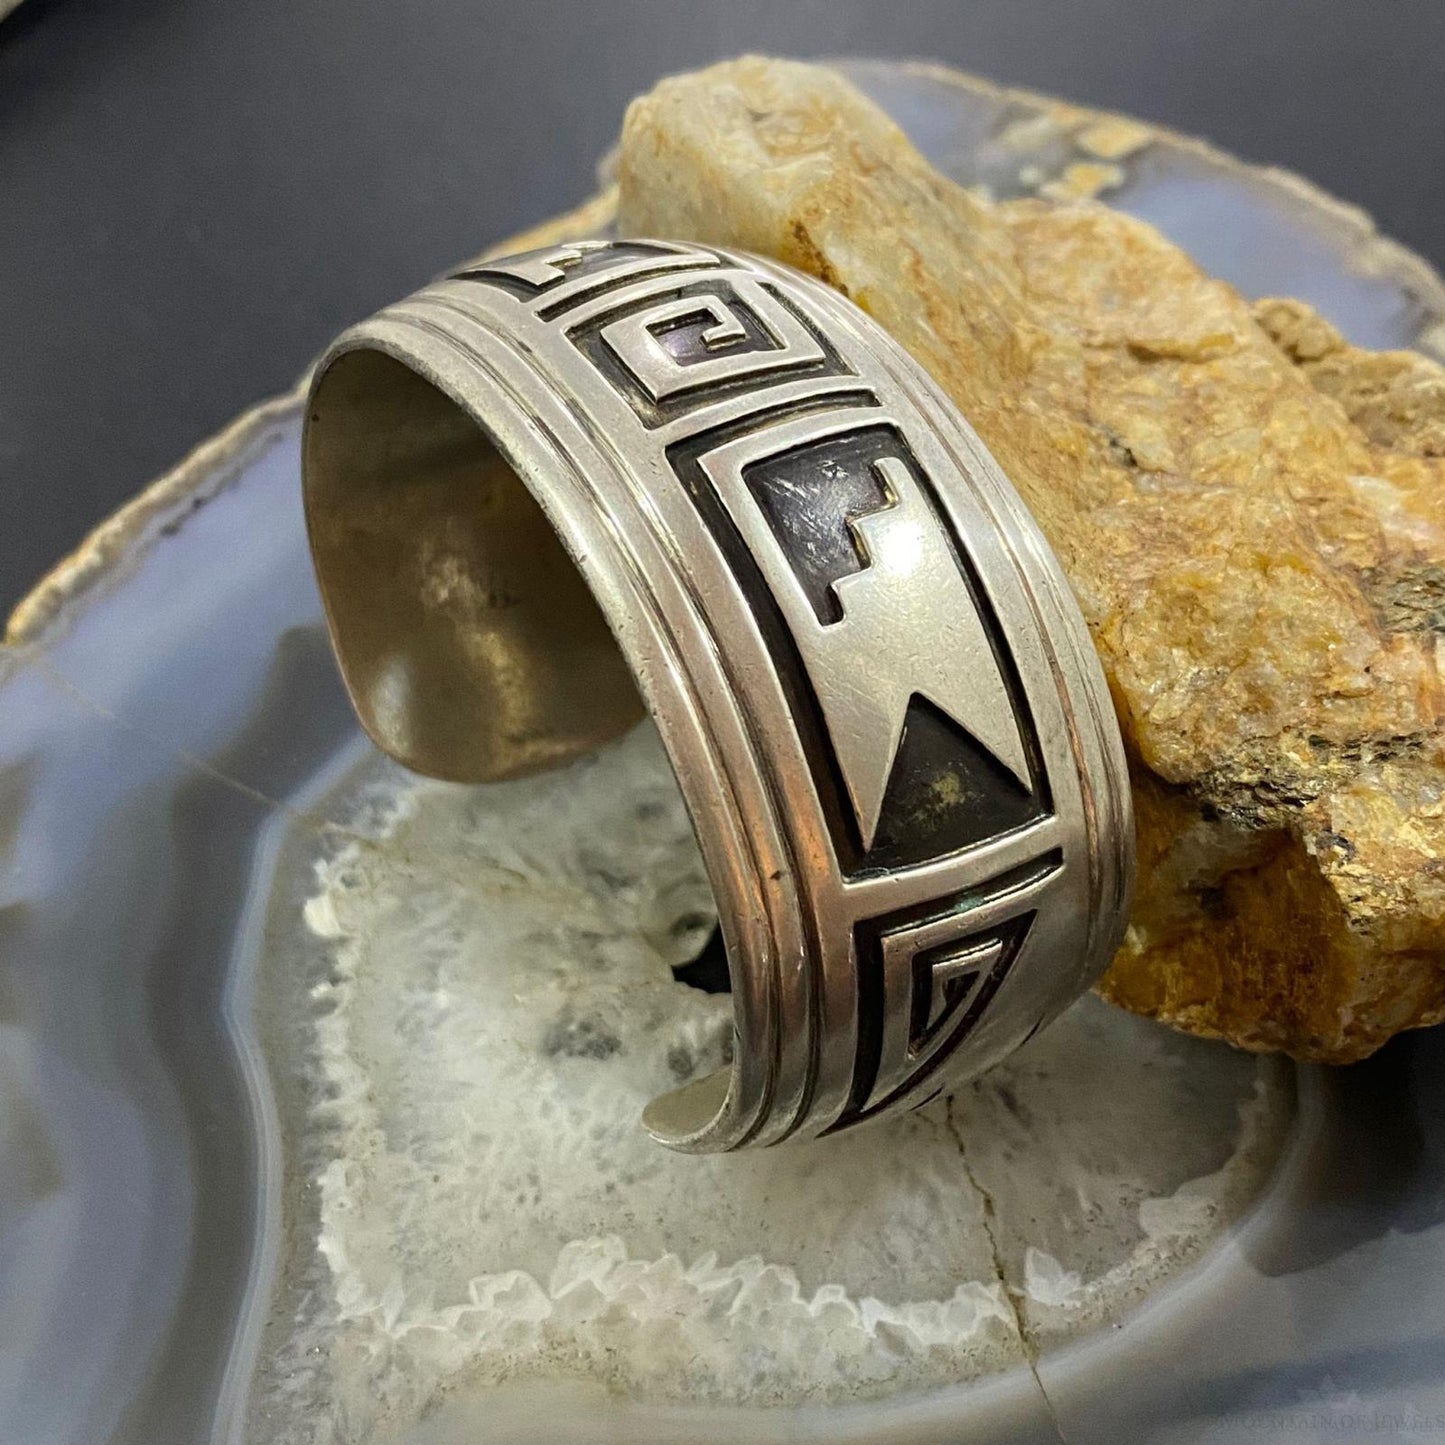 Vintage Native American Silver SW Motif Hopi Overlay Bracelet For Women #1